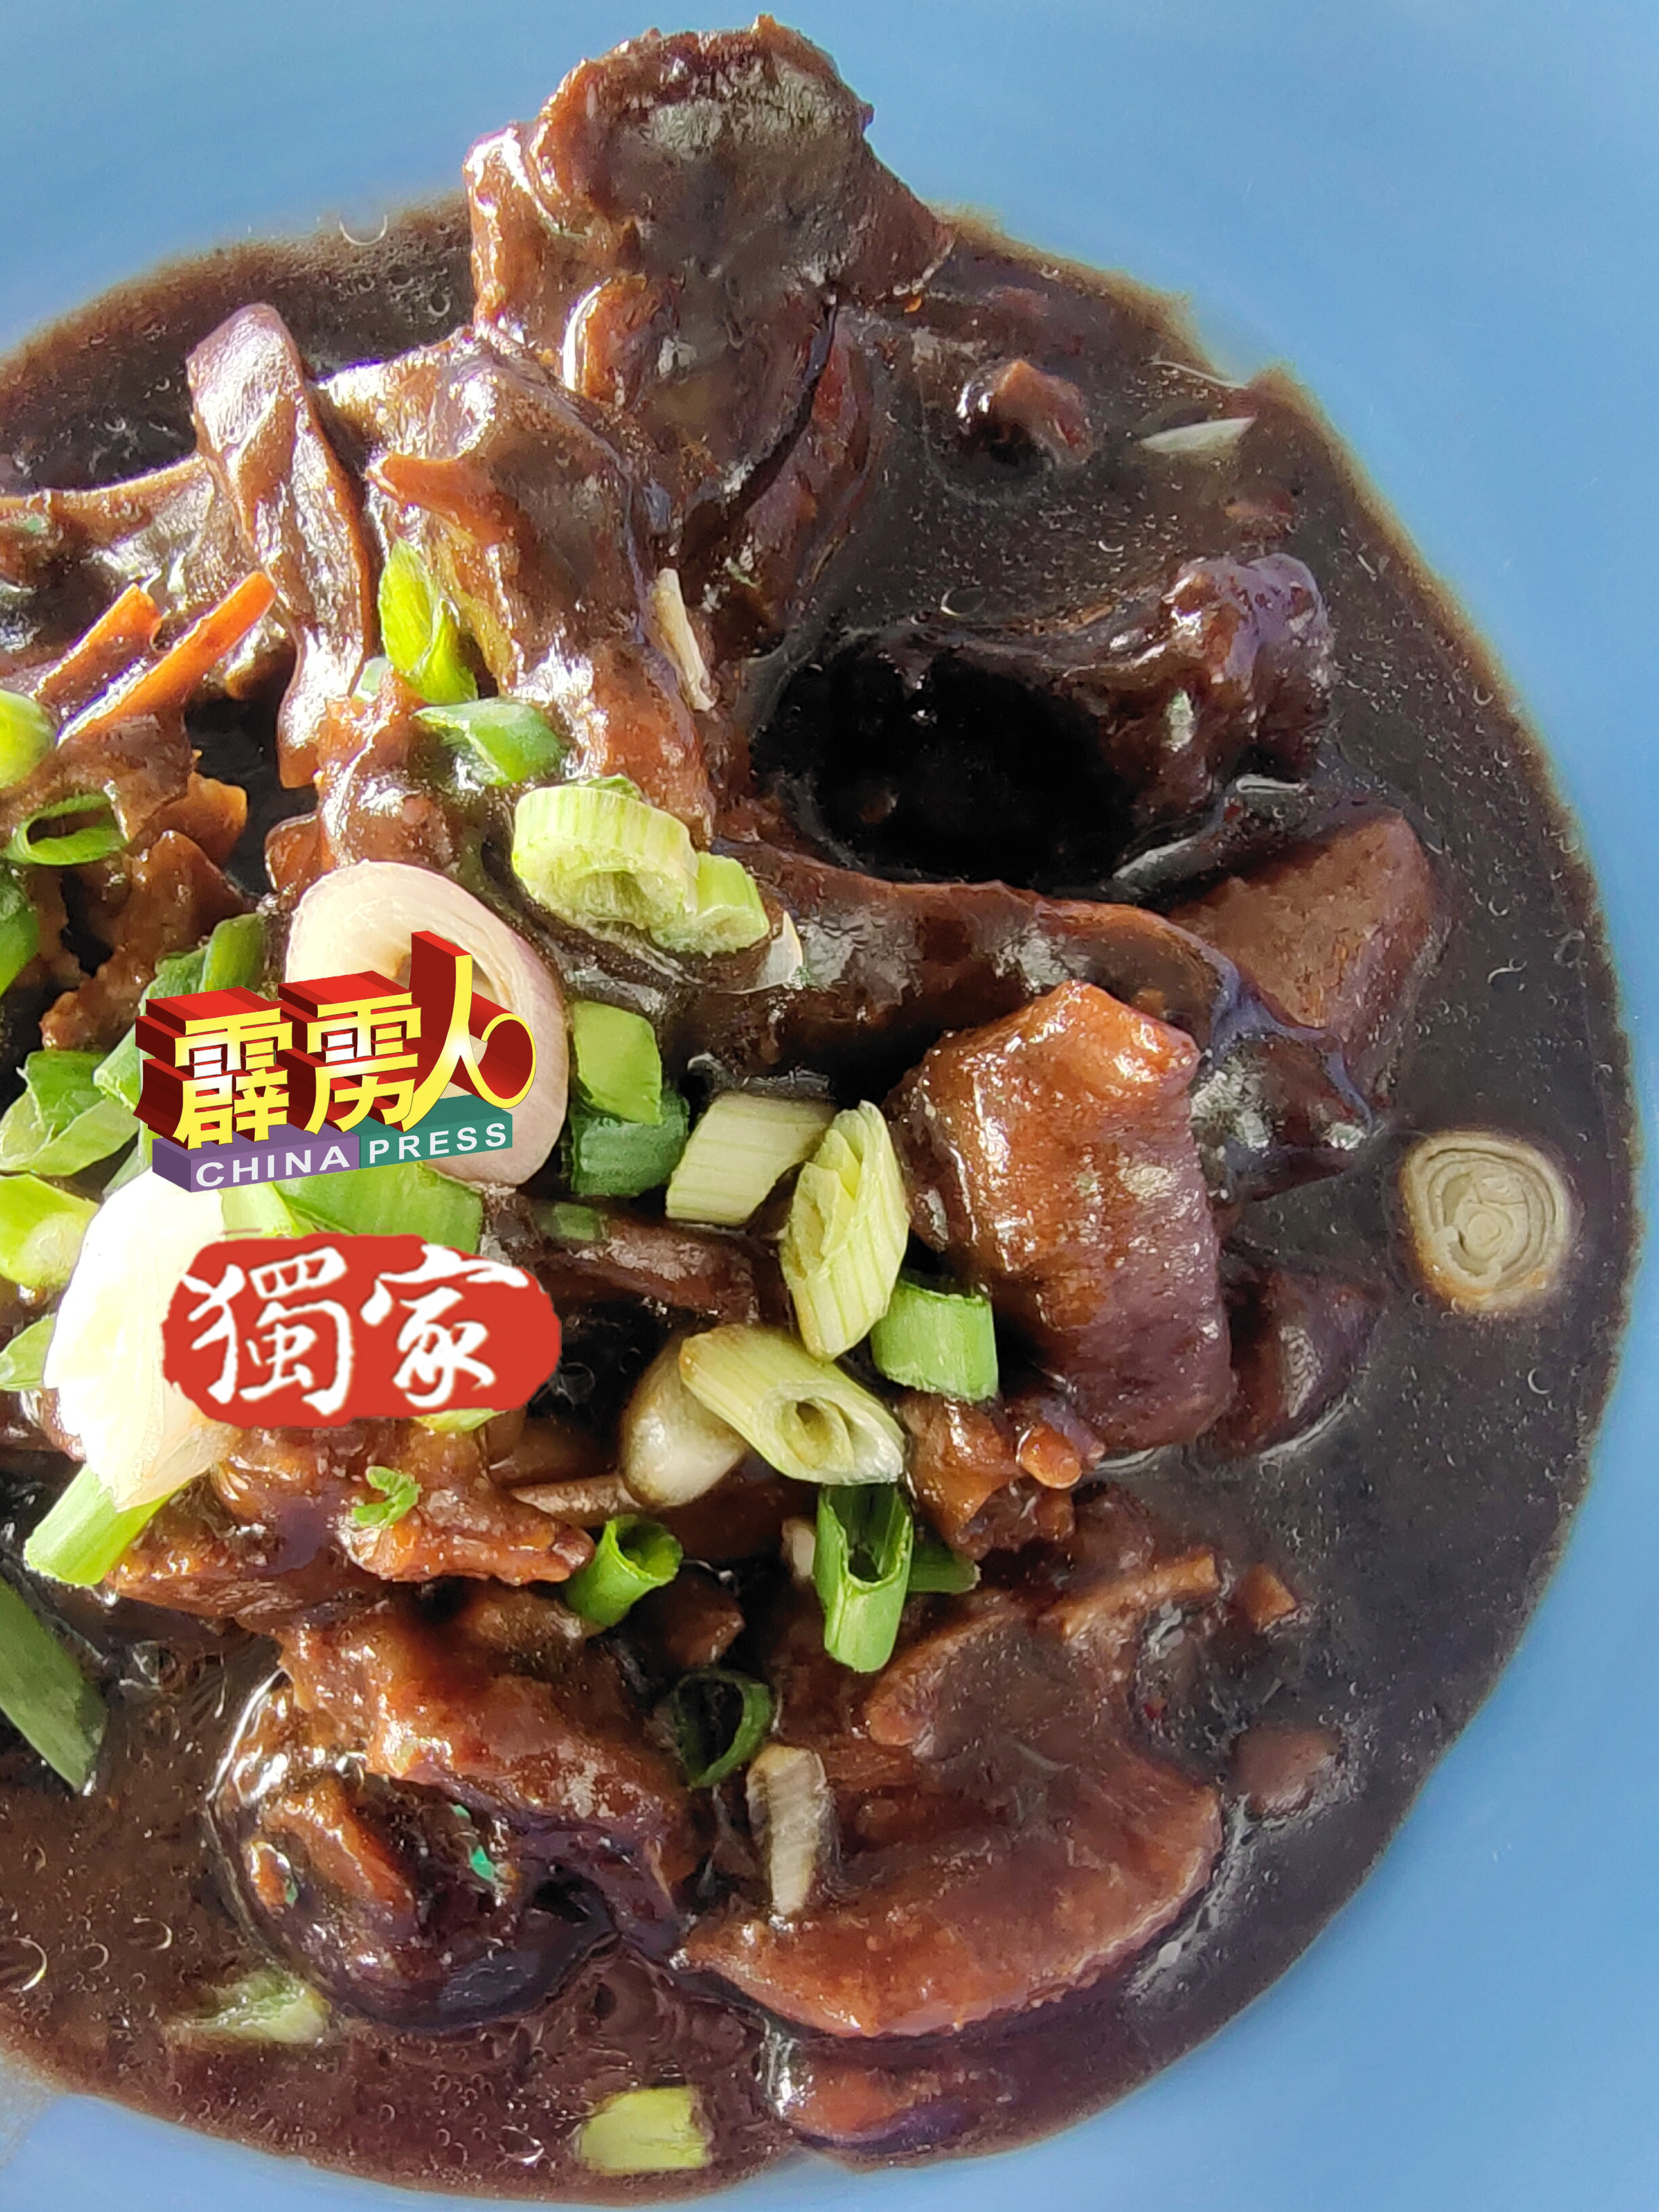 姜鸭是亚秋云吞麵的招牌之一，老食客在结业当天有幸还吃到这道美食。